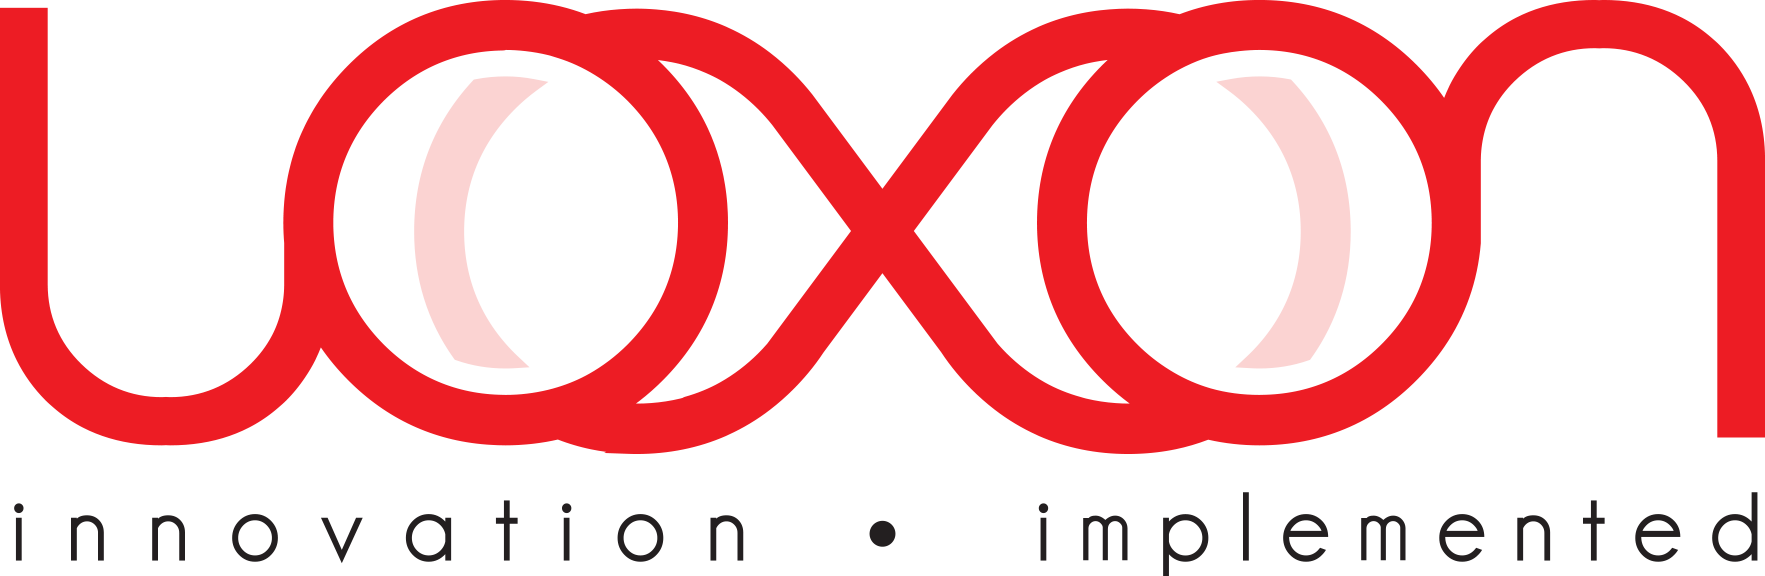 Loxon logó